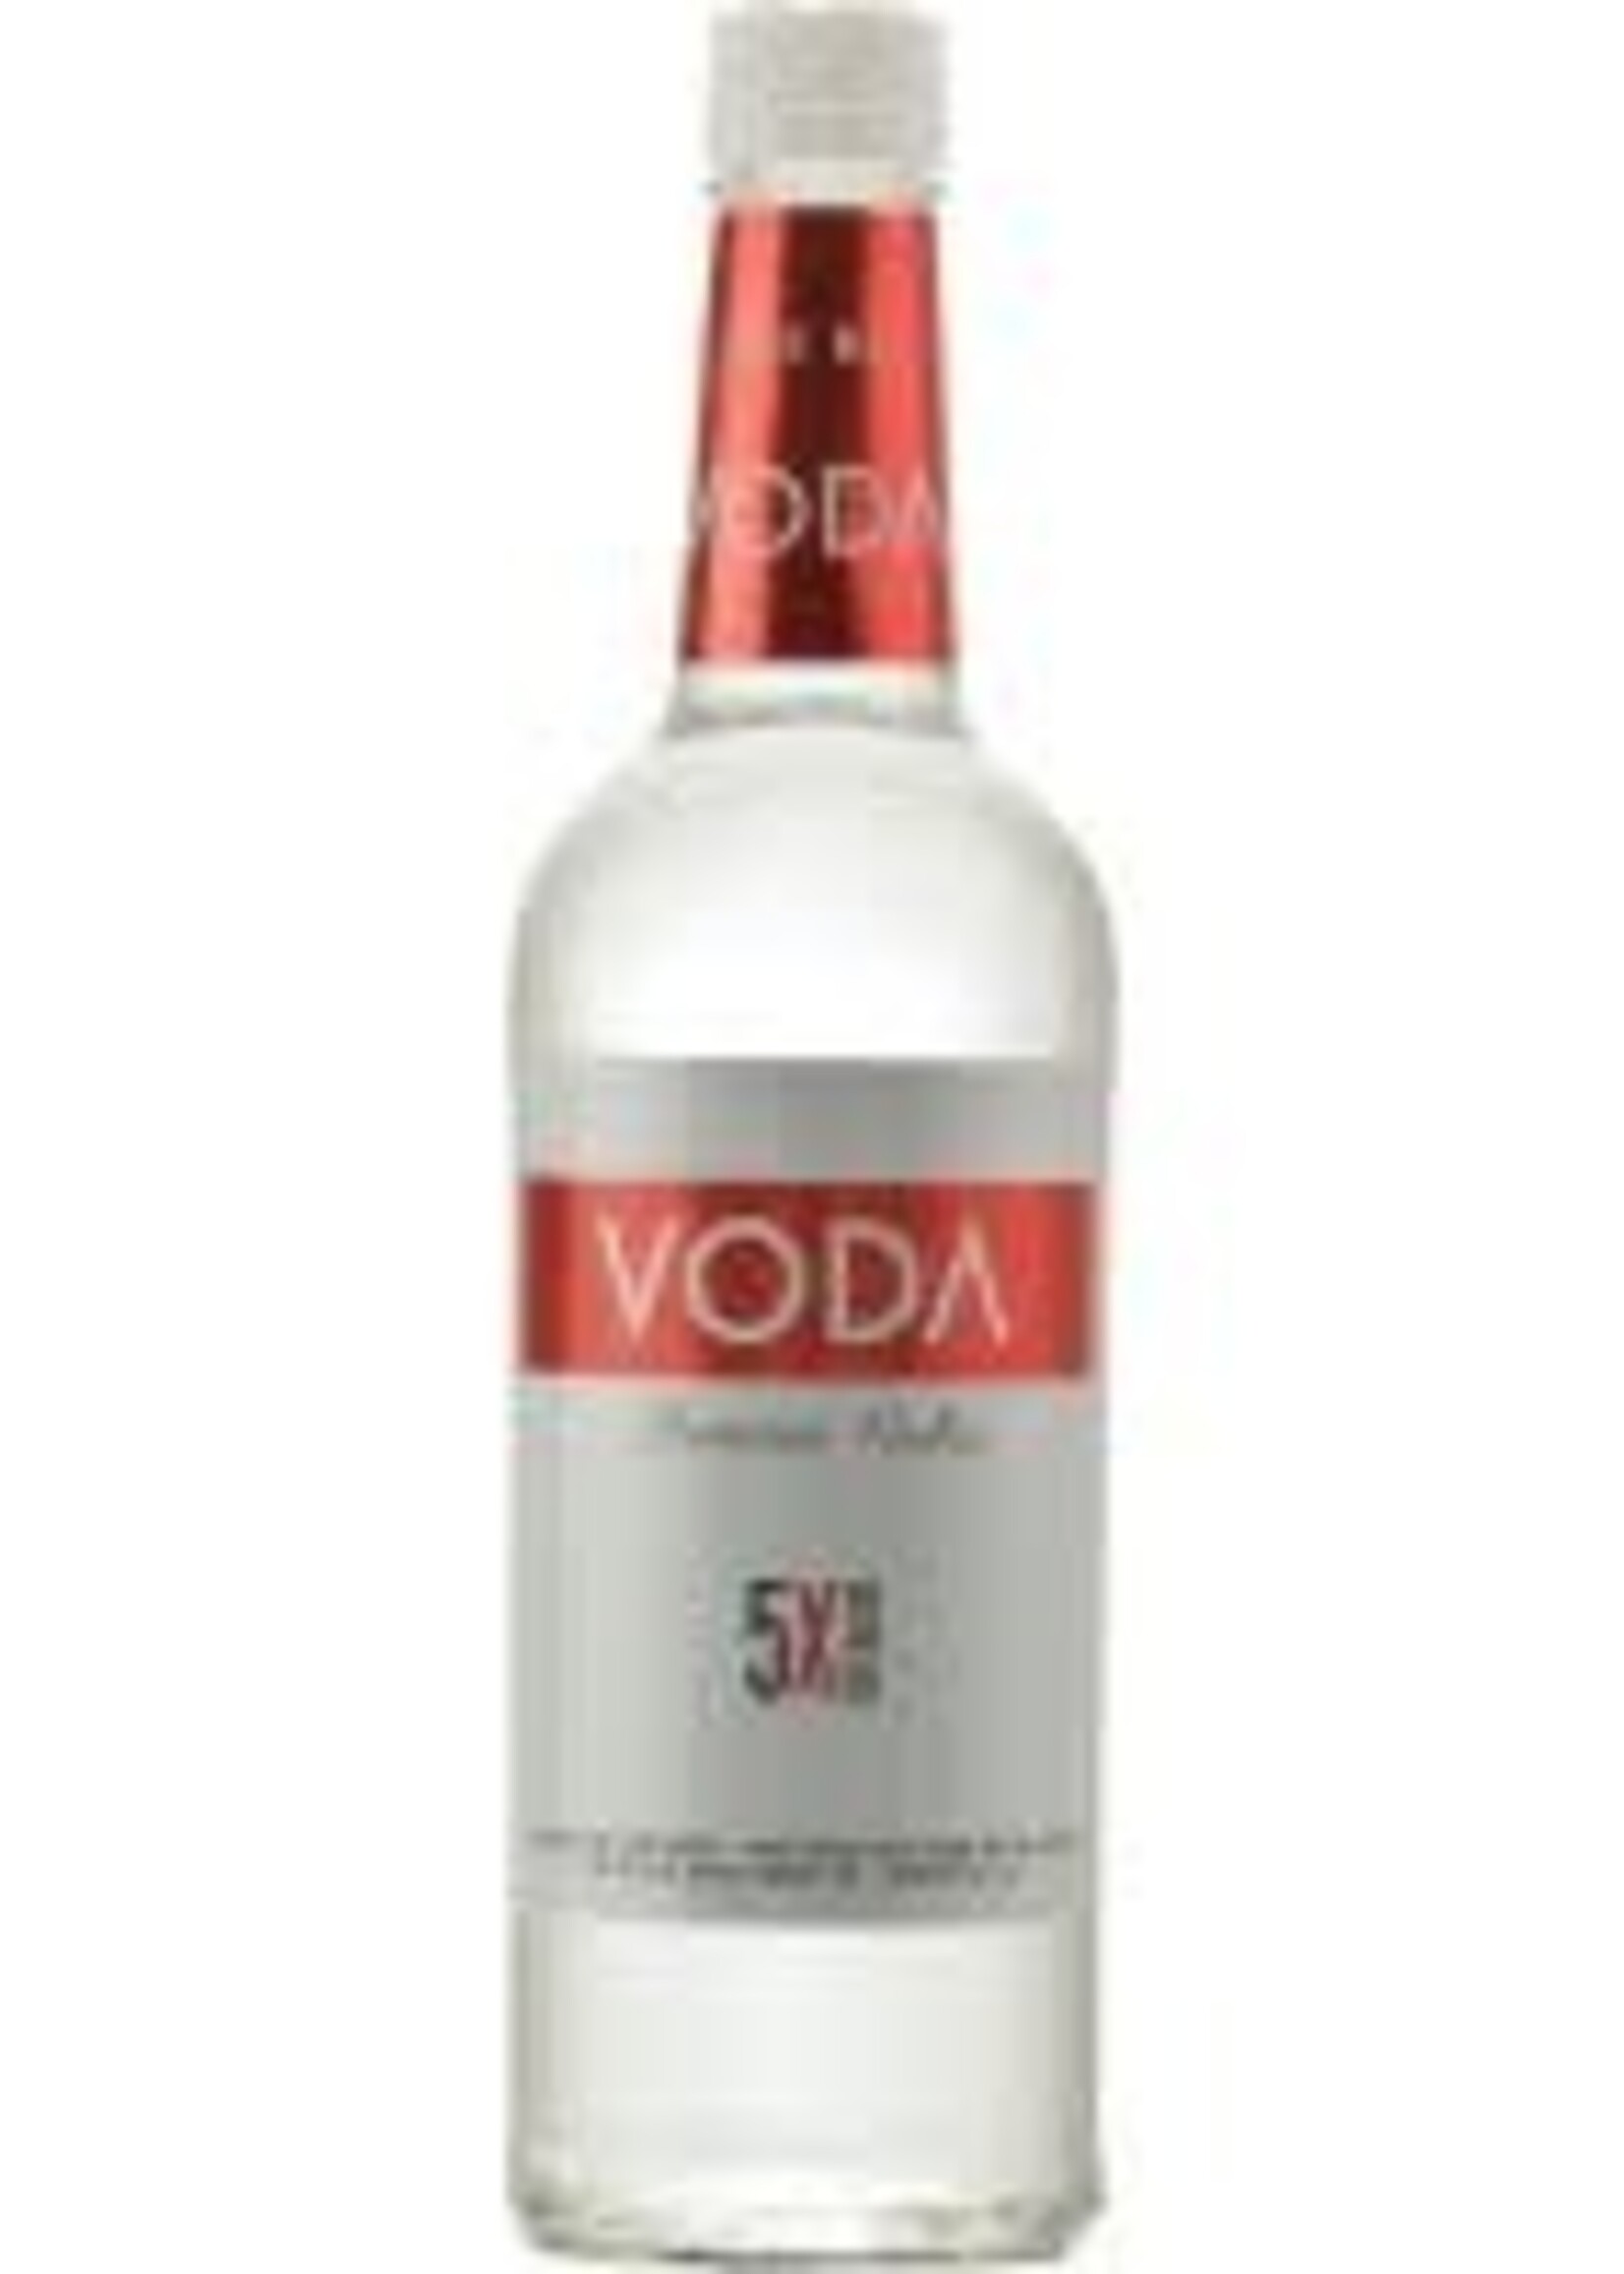 vodka voda premium vodka  1L